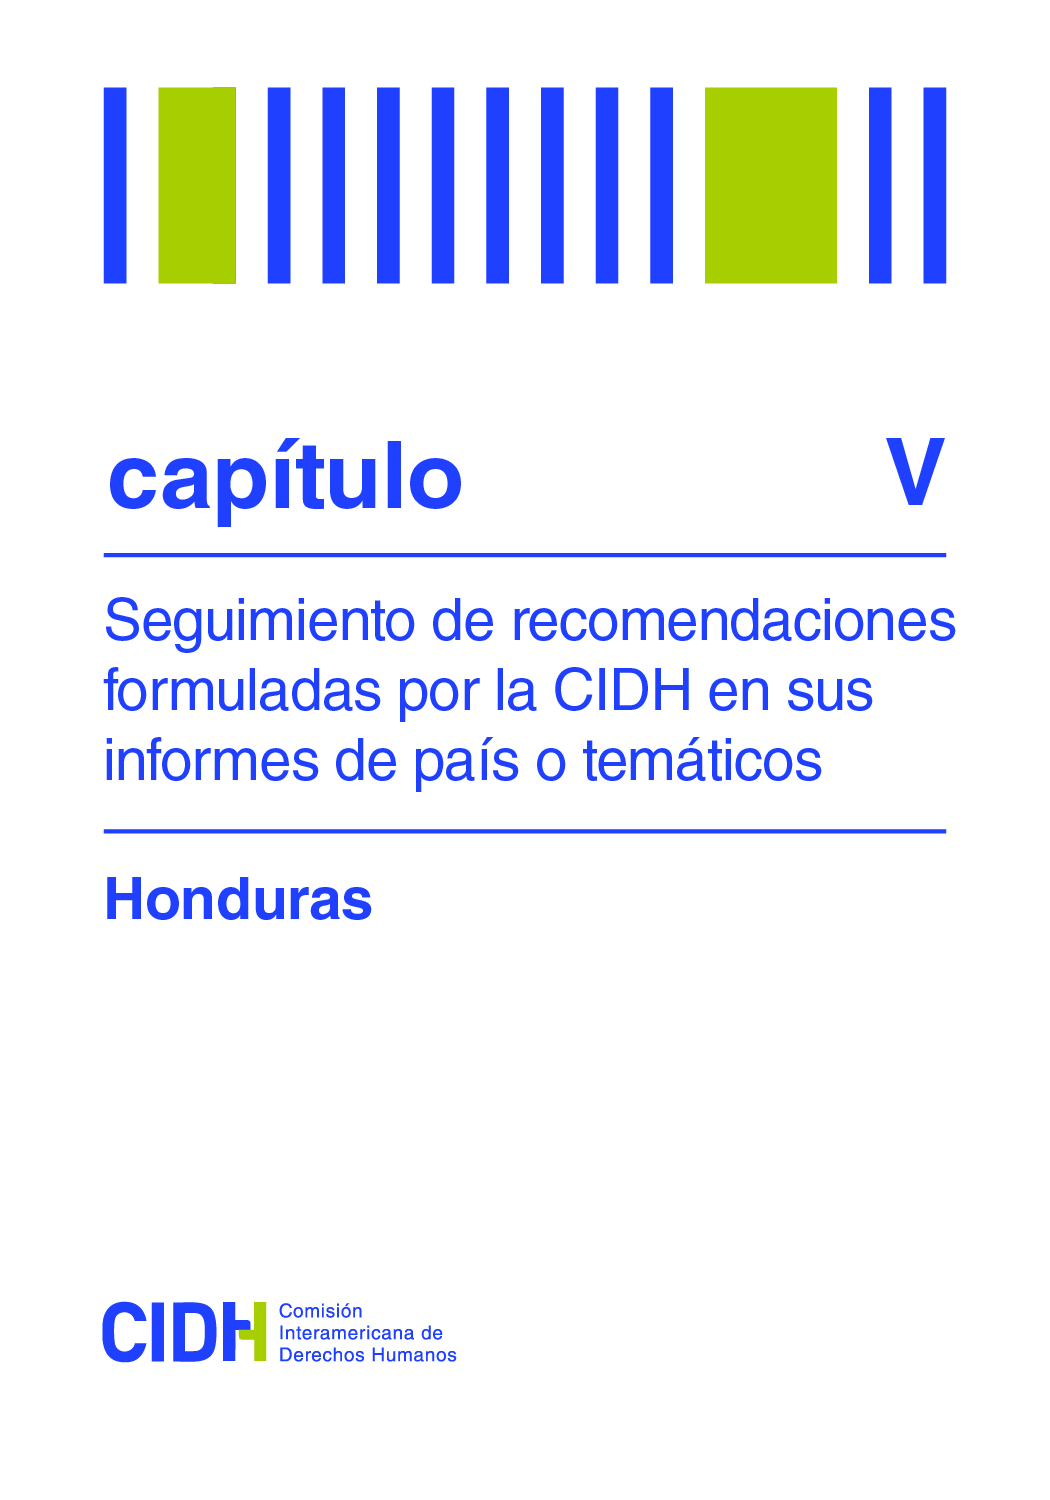 Segundo informe de seguimiento de las recomendaciones formuladas por la CIDH en el Informe sobre la situación de Derechos Humanos en Honduras